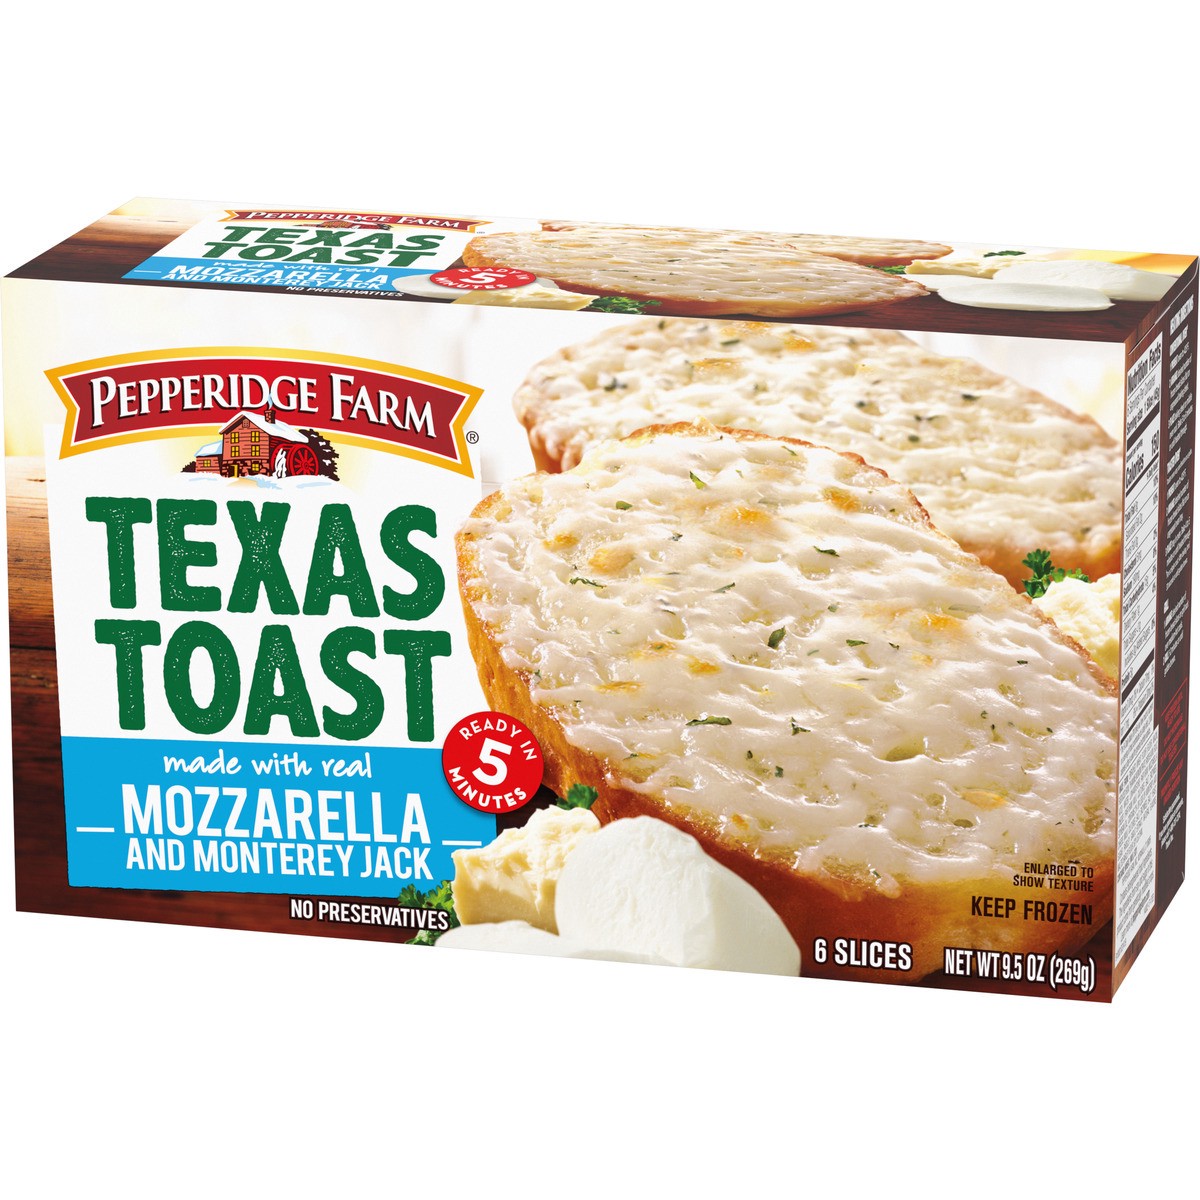 slide 3 of 9, Pepperidge Farm Texas Toast Frozen Mozzarella & Monterey Jack Bread, 6 Slices, 9.5 oz. Box, 9.5 oz